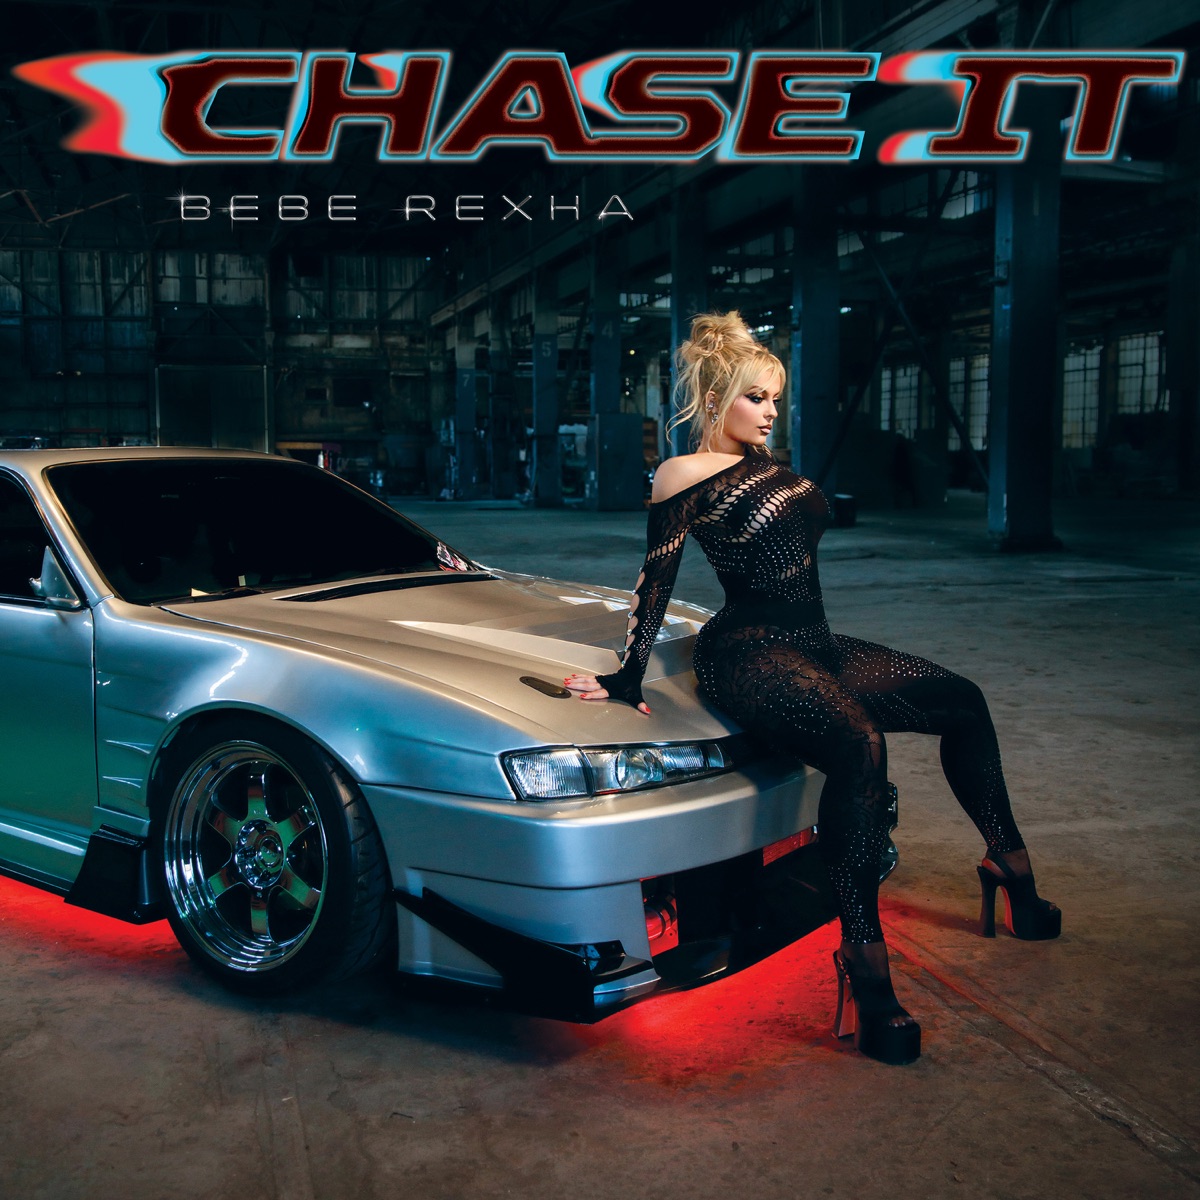 Bebe Rexha - Chase It (Mmm Da Da Da) 1